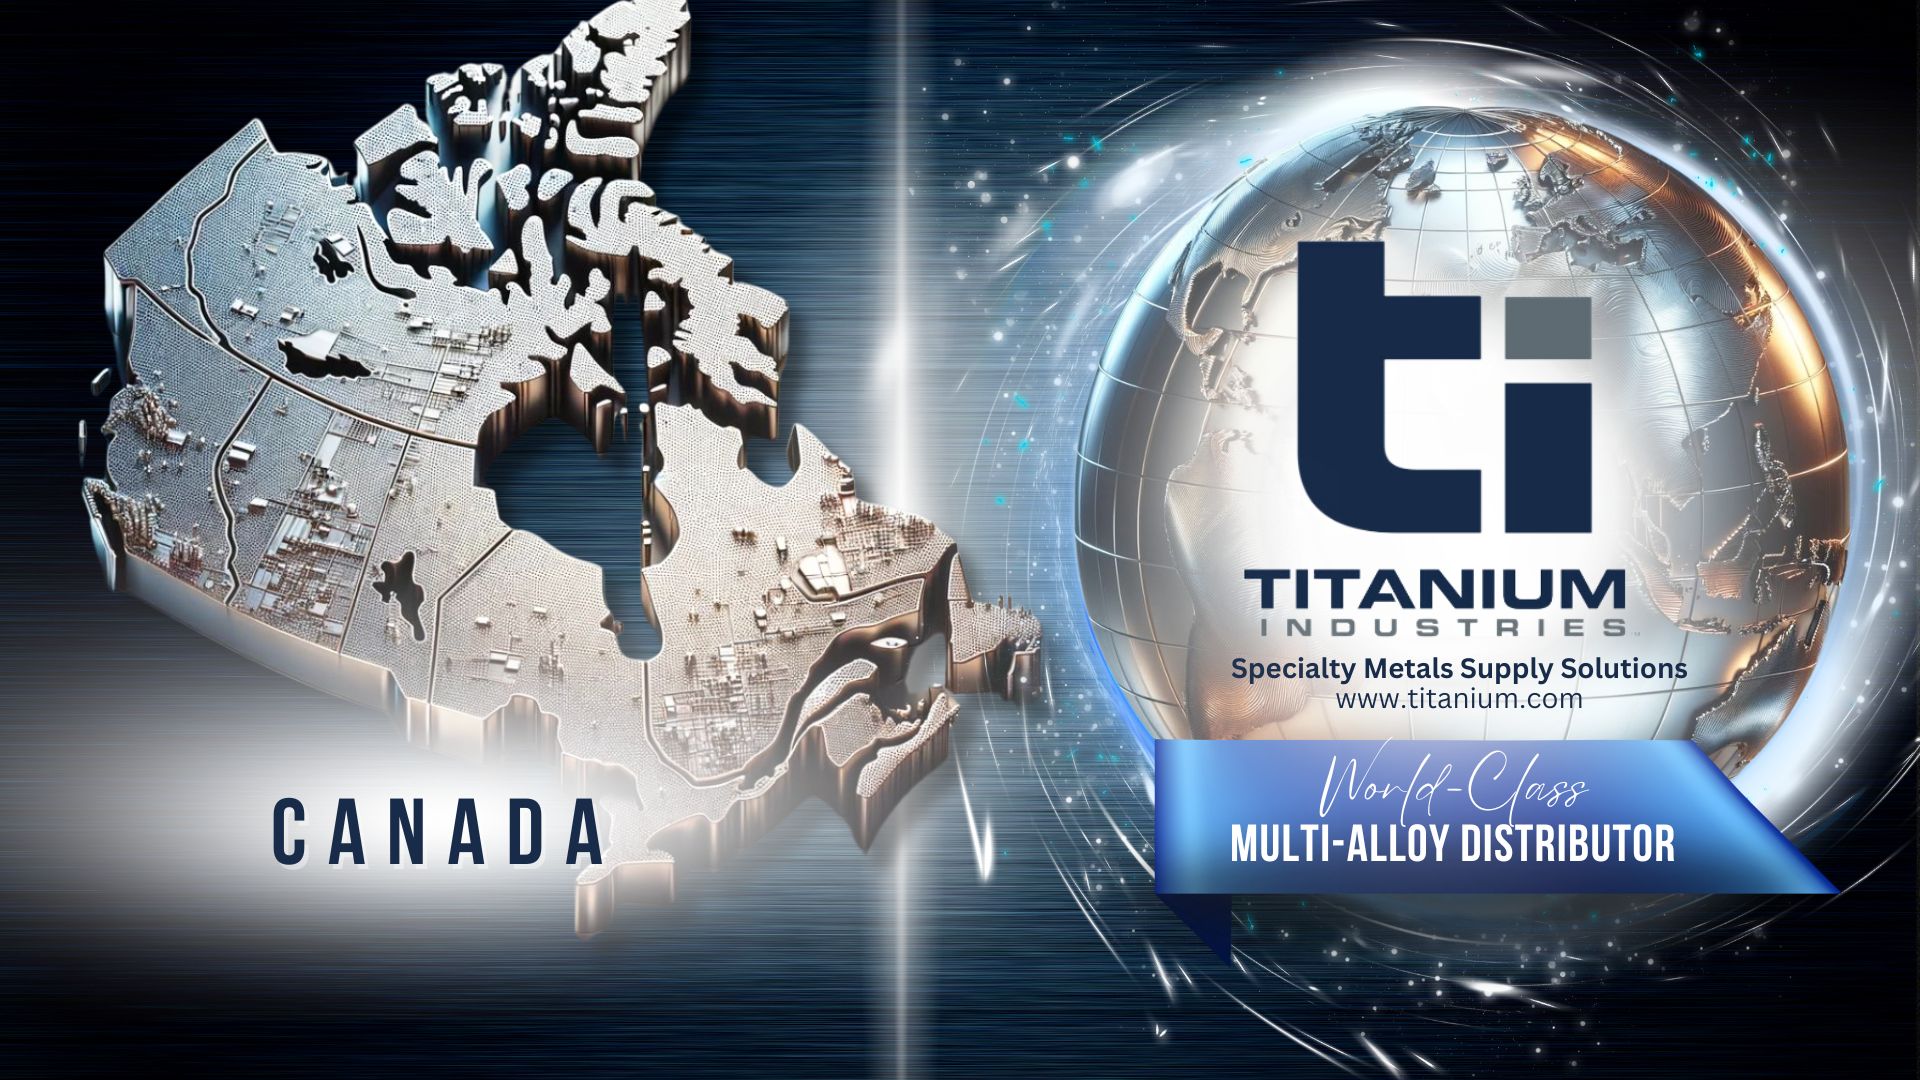 Titanium Industries Canada